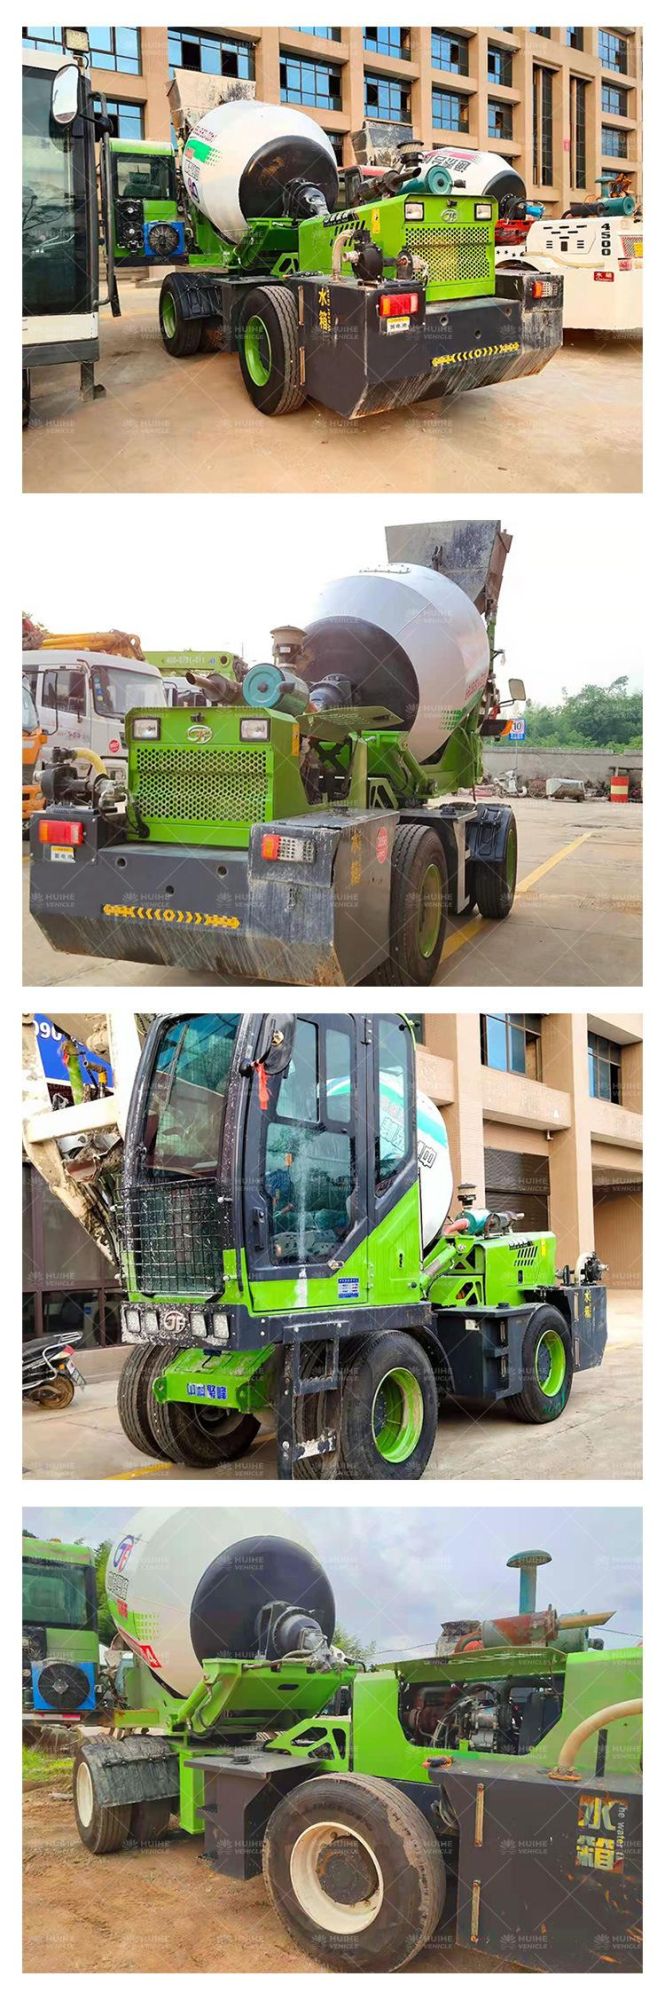 China Supplier 3m3 Cement Mixer Diesel Concrete Mixer Drum Truck Price